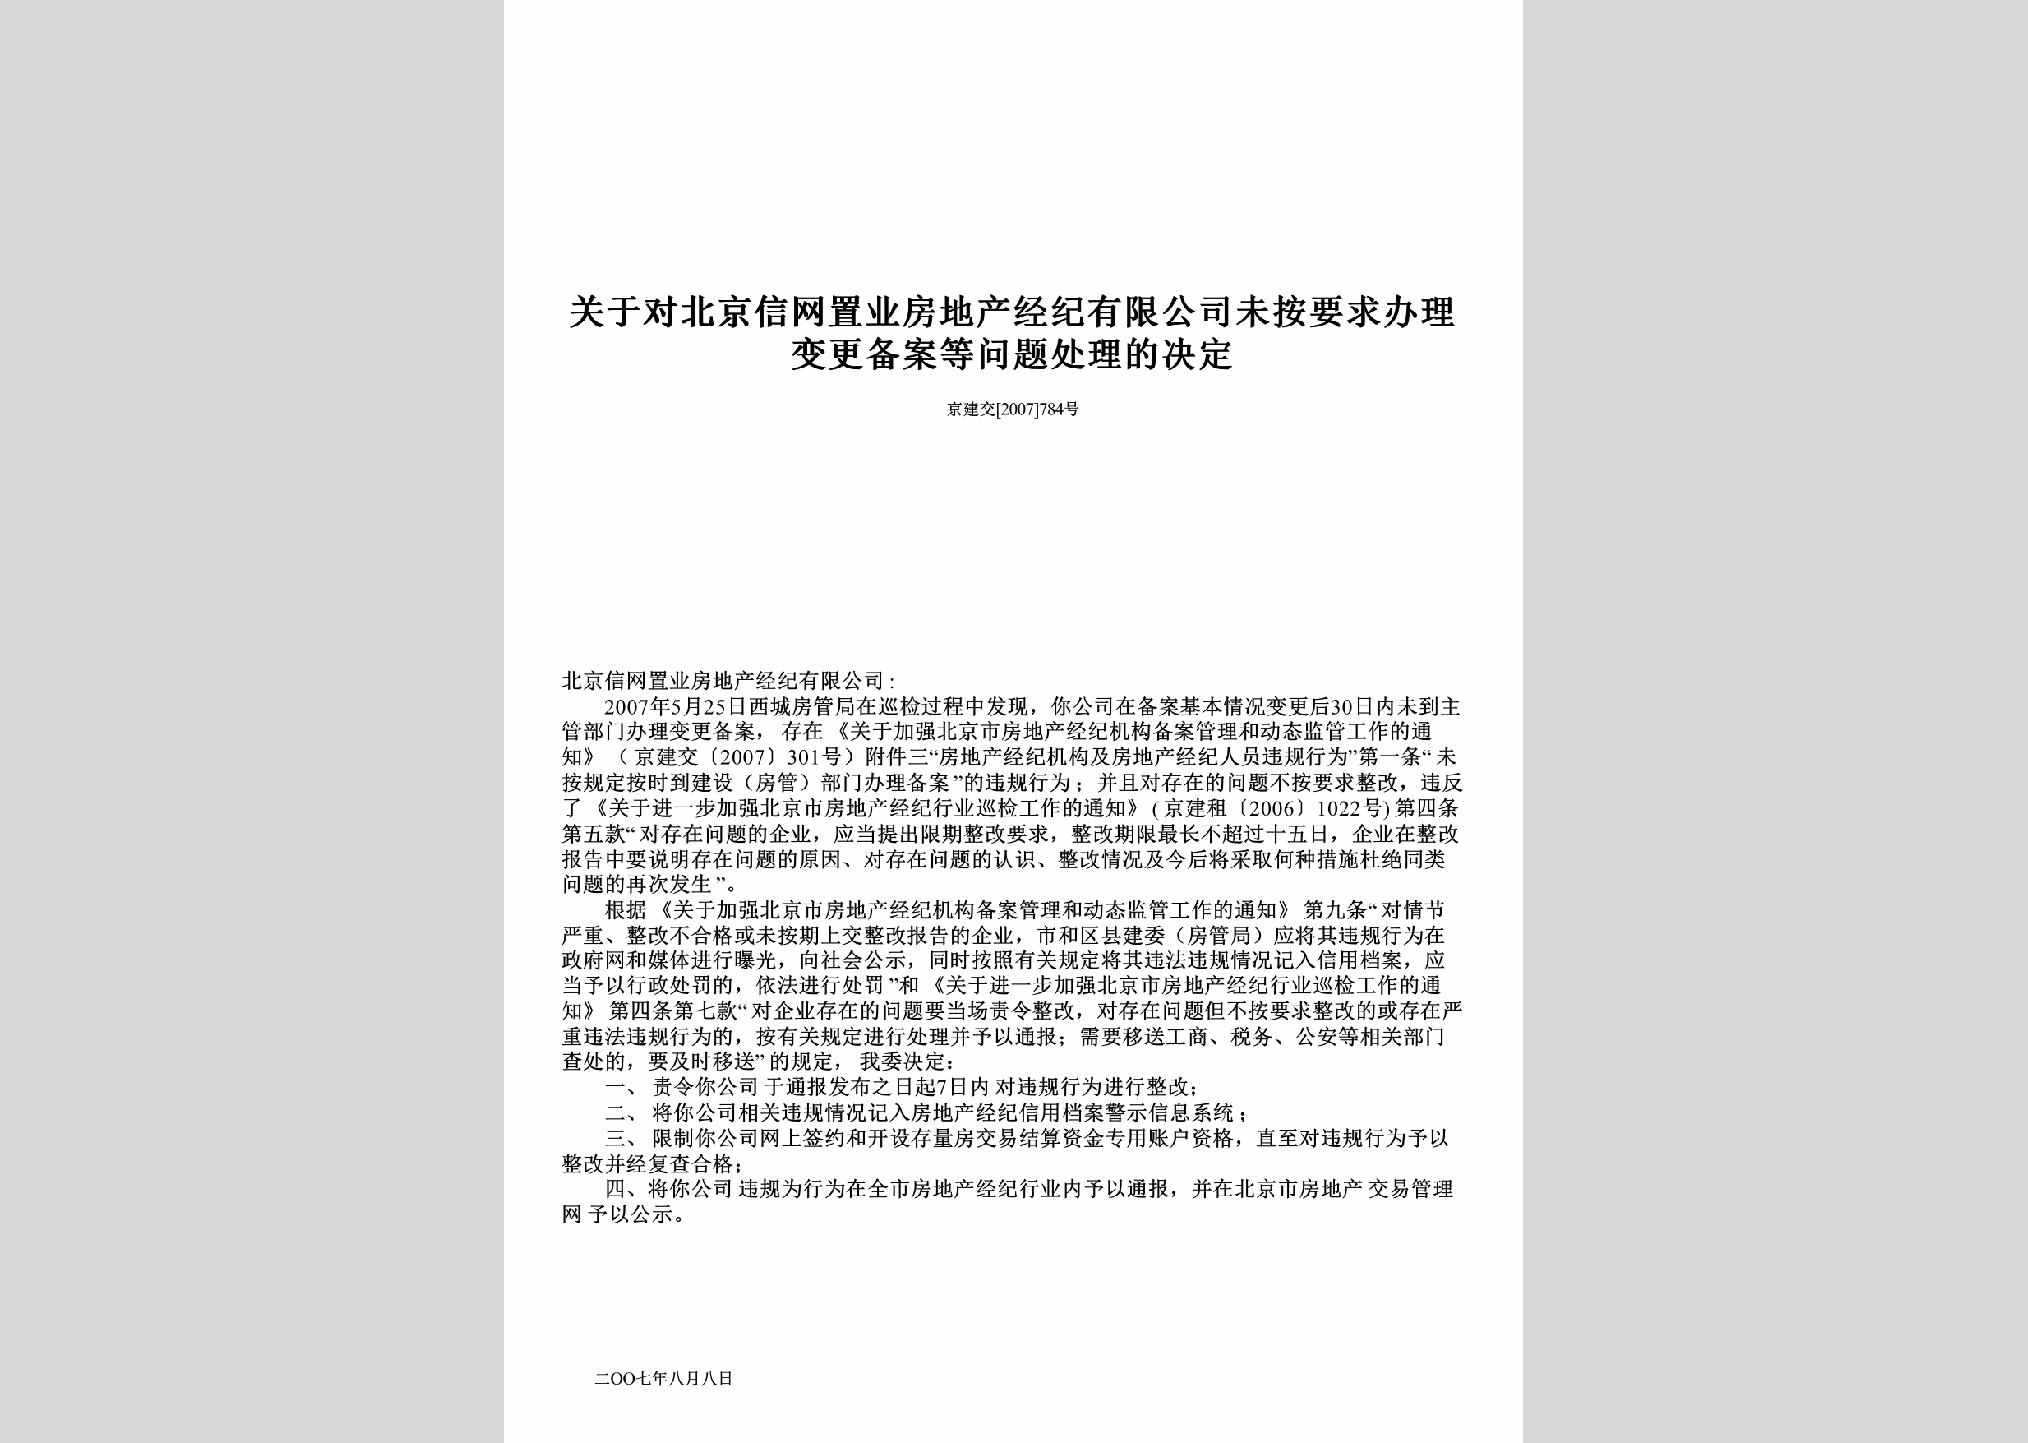 京建交[2007]784号：关于对北京信网置业房地产经纪有限公司未按要求办理变更备案等问题处理的决定